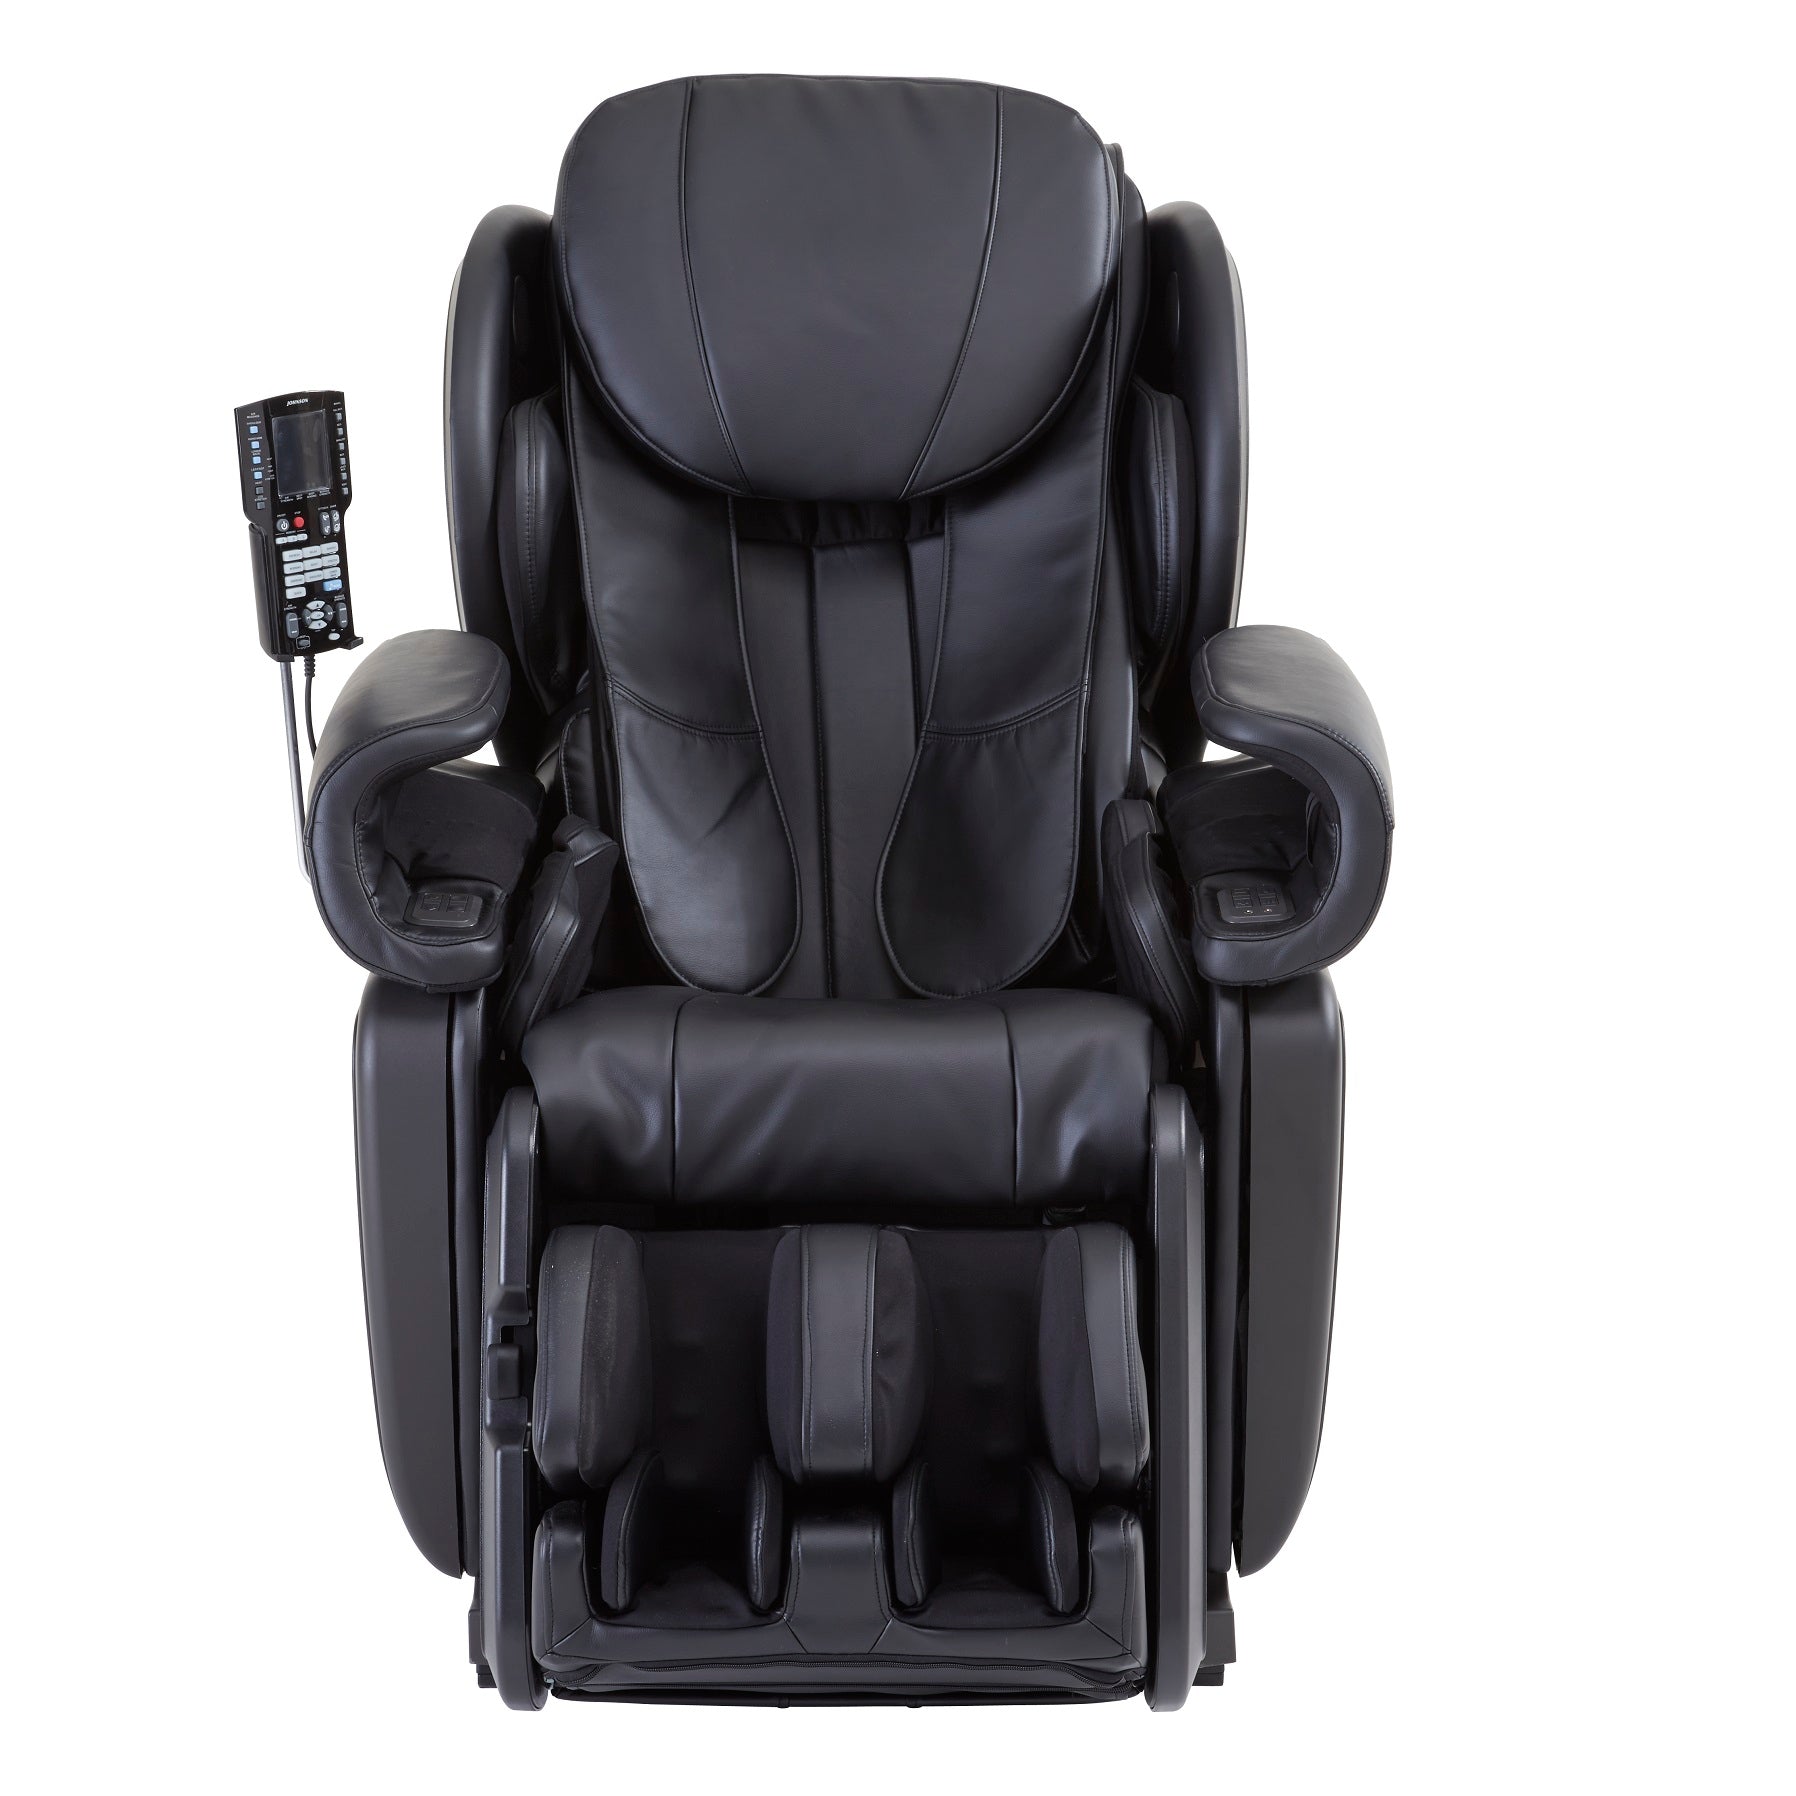 Johnson Wellness: J6800 Japanese Designed 4D Massage Chair